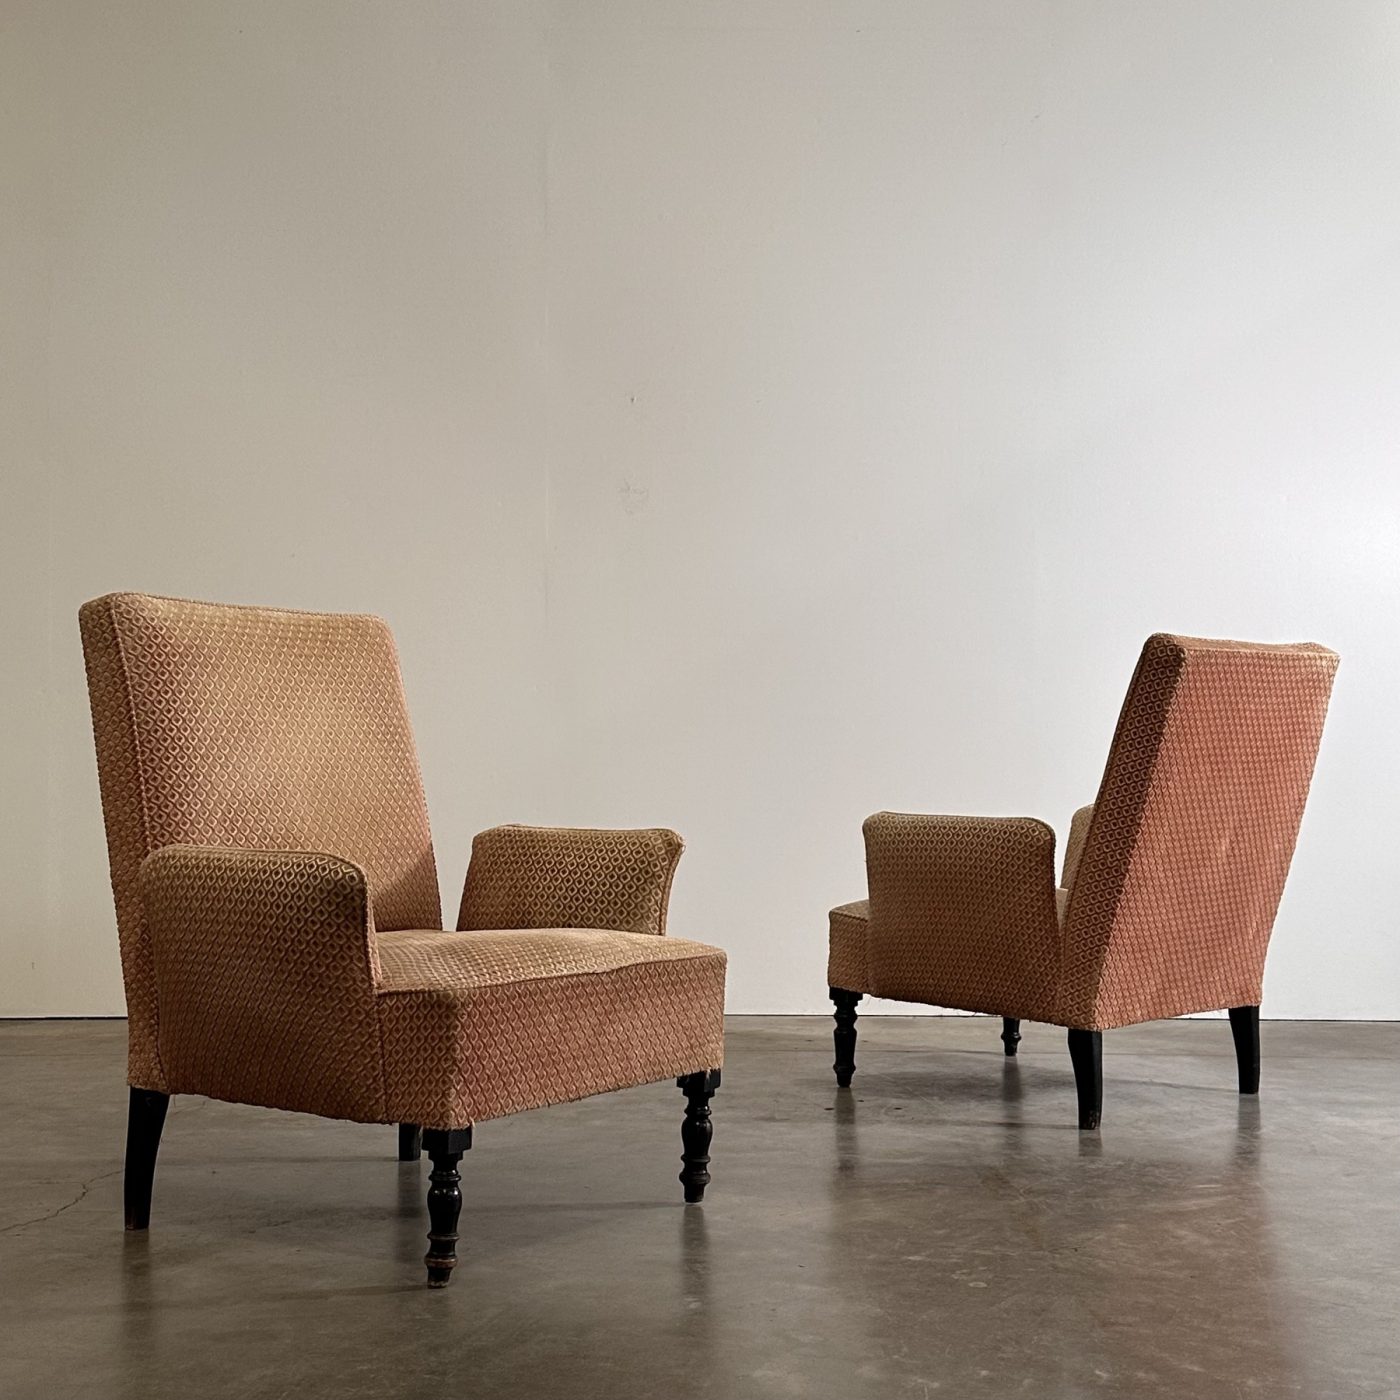 objet-vagabond-napoleon3-armchairs0000